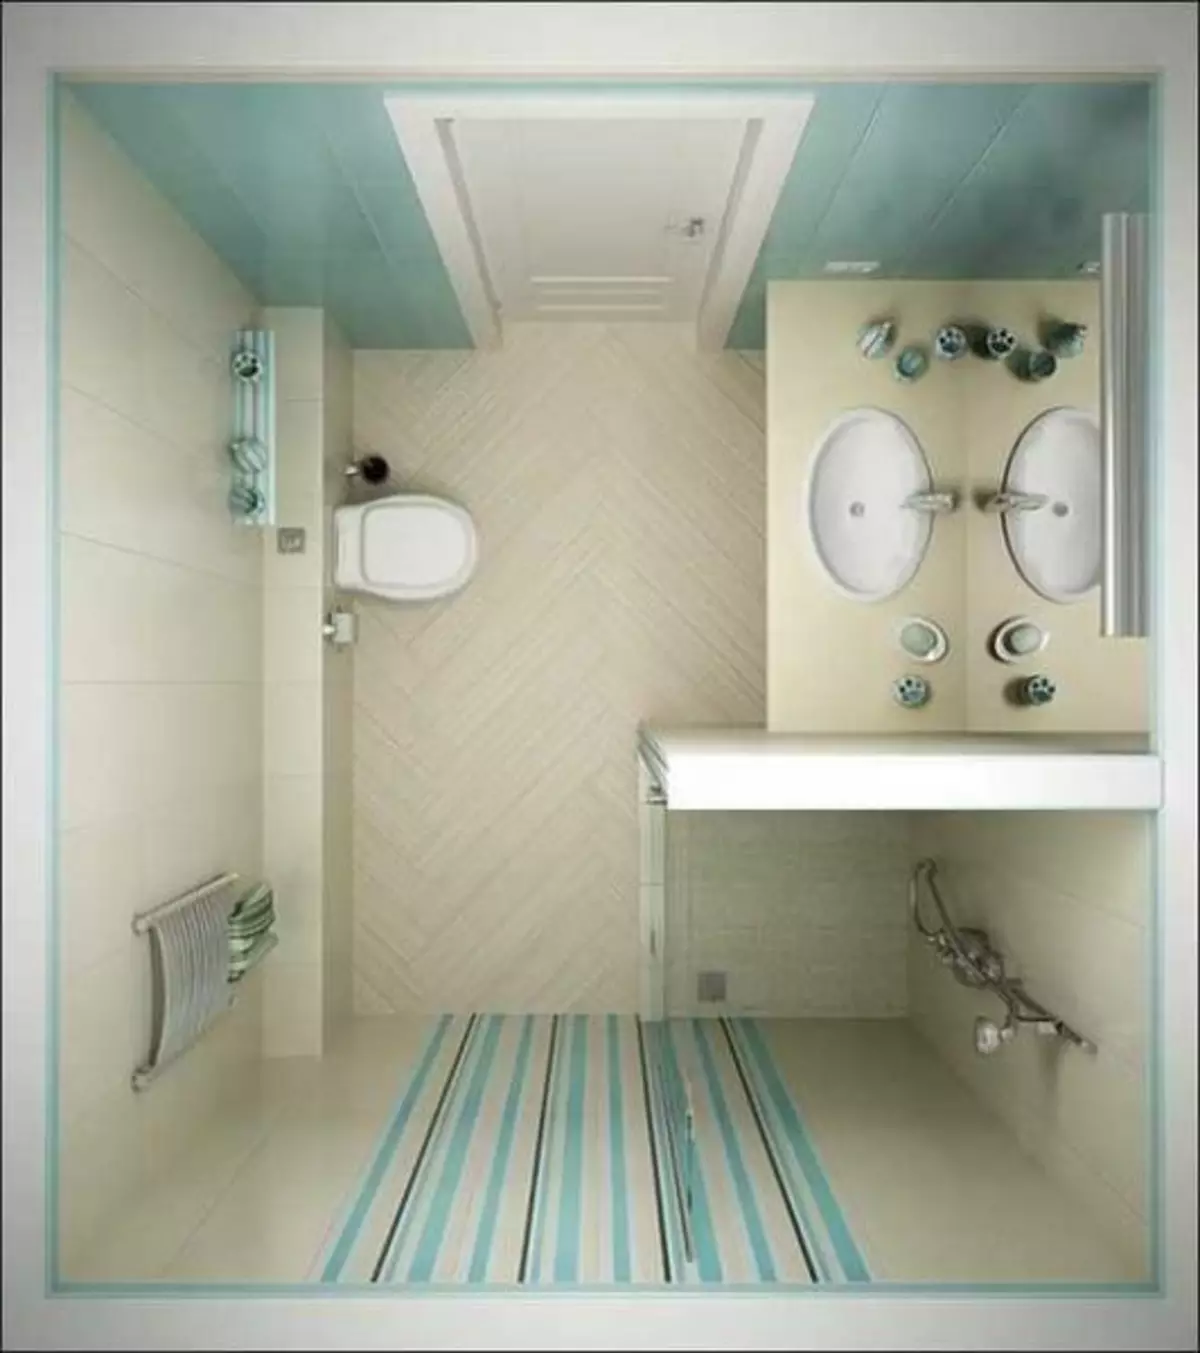 Potong kamar mandi: Urang ngembangkeun desain diri anjeun